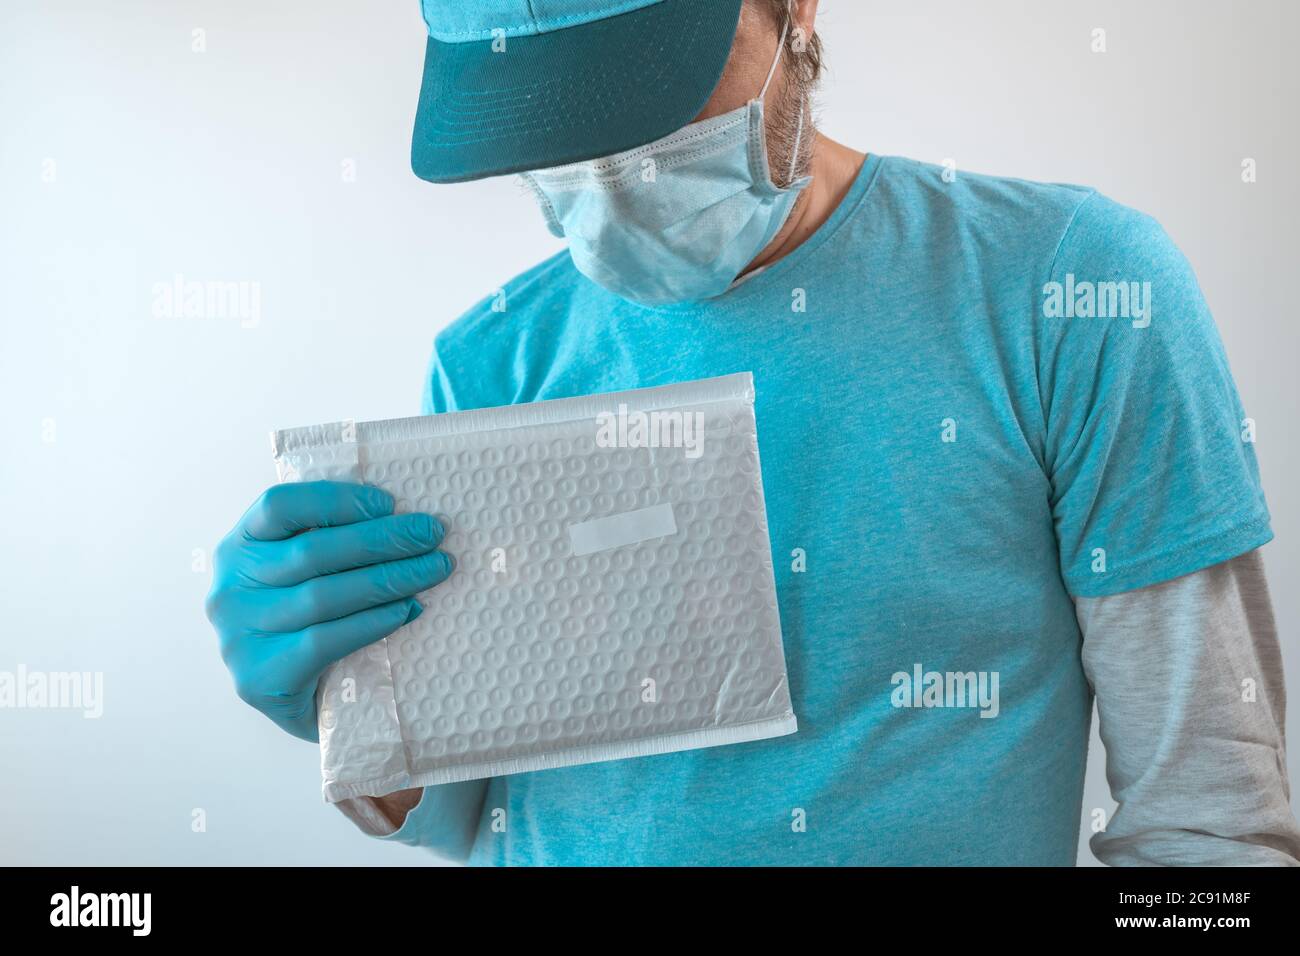 Lieferung Mann posiert mit Paket in Schutzkleidung tragen Baseball-Kappe, Schutzmaske und Handschuhe während Virusinfektion Pandemie outbre Stockfoto